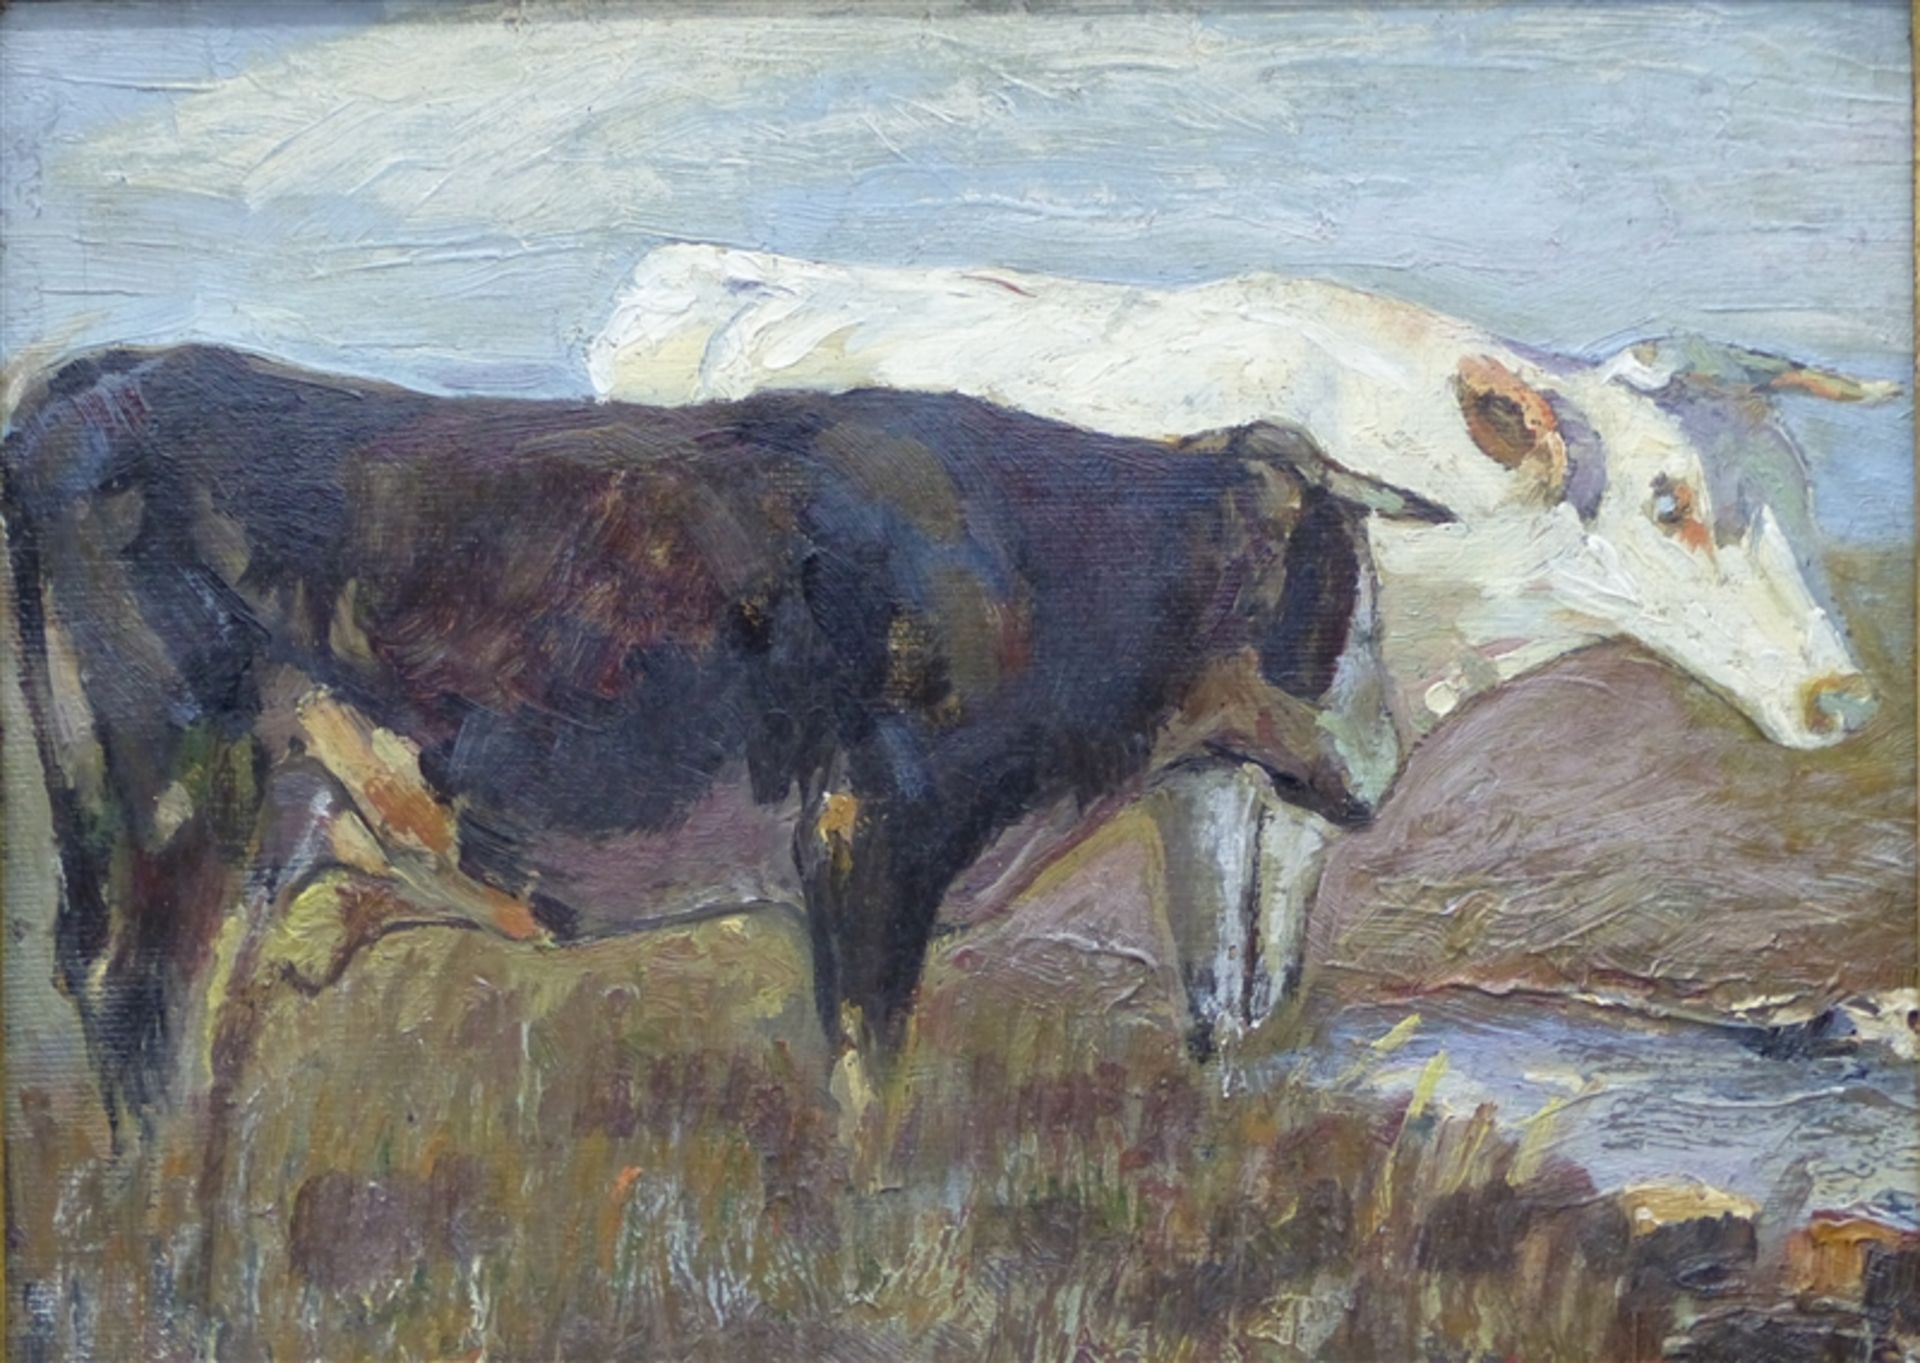 Tiermaler Öl auf Leinen, aufgezogen, 2 Kühe am Wasser, in der Art von Zügel, rechts unten